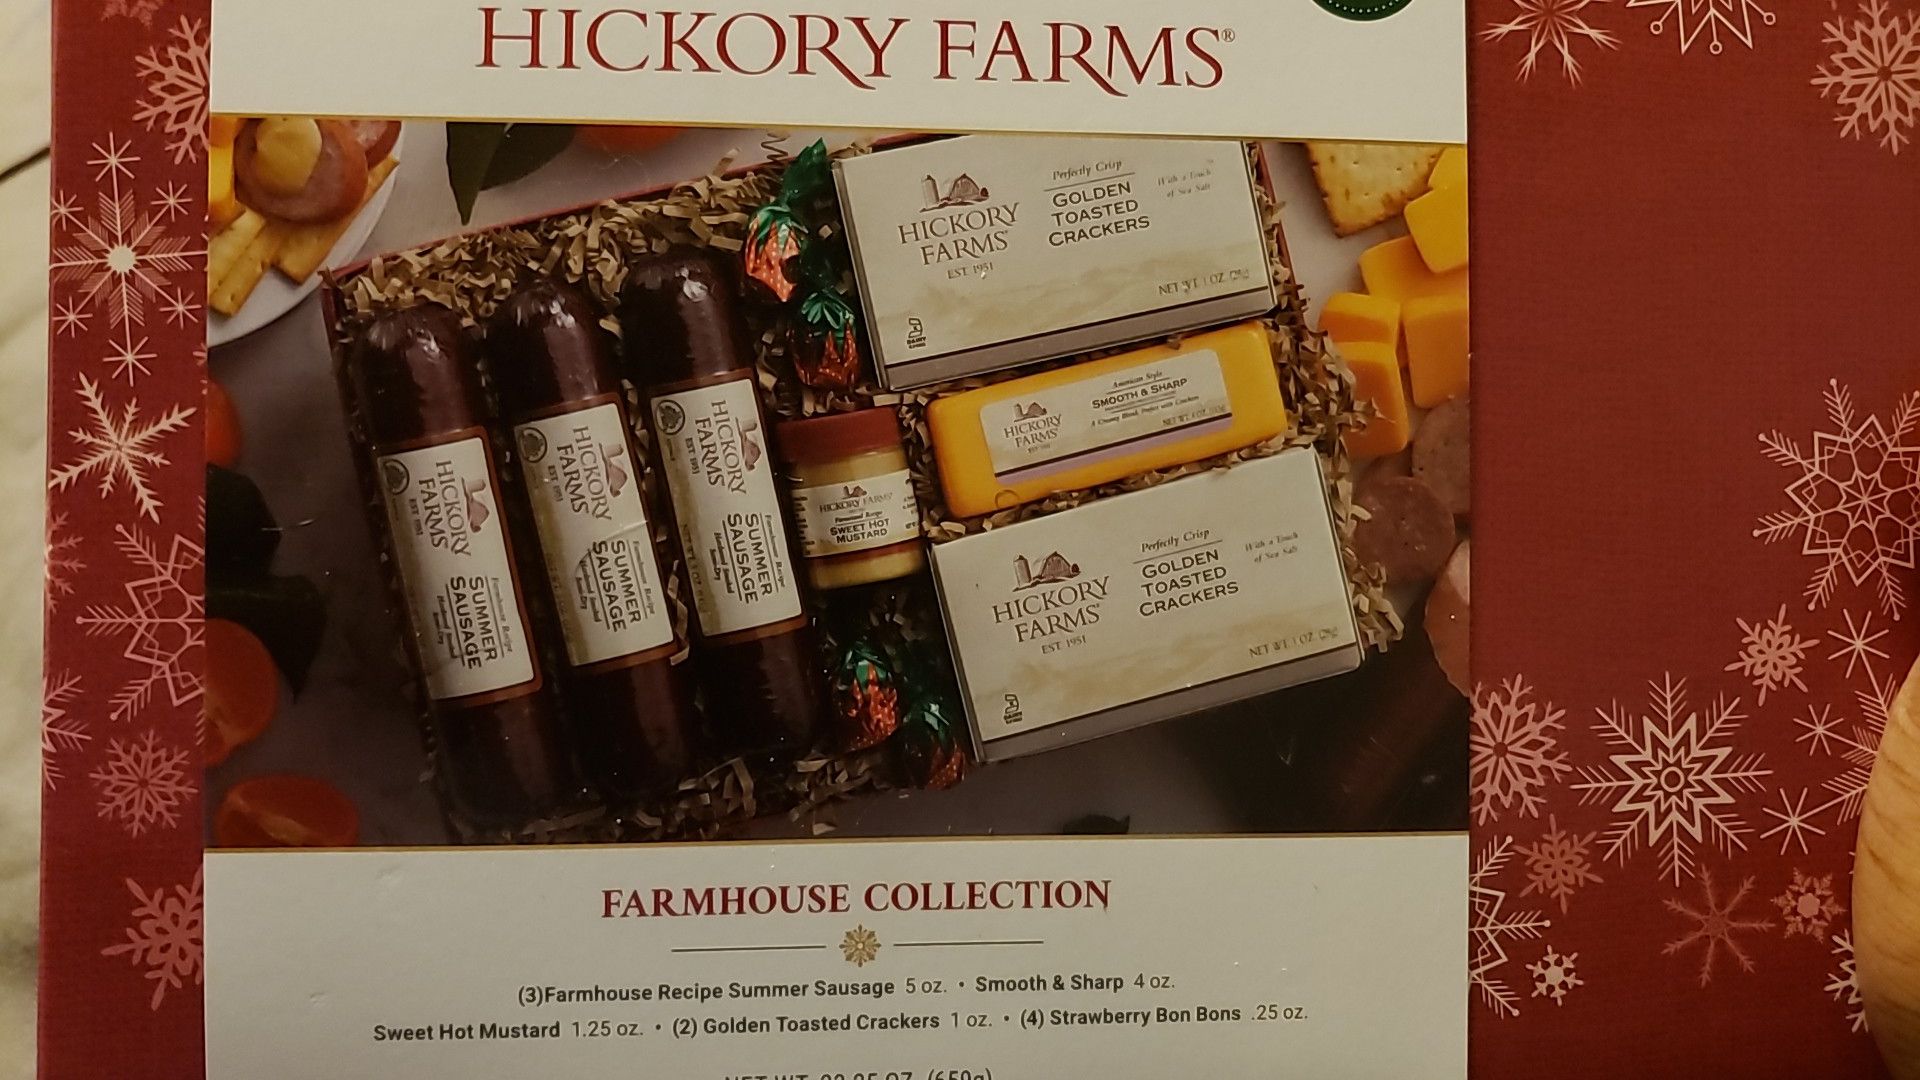 Hickory farms farmhouse collection gift set